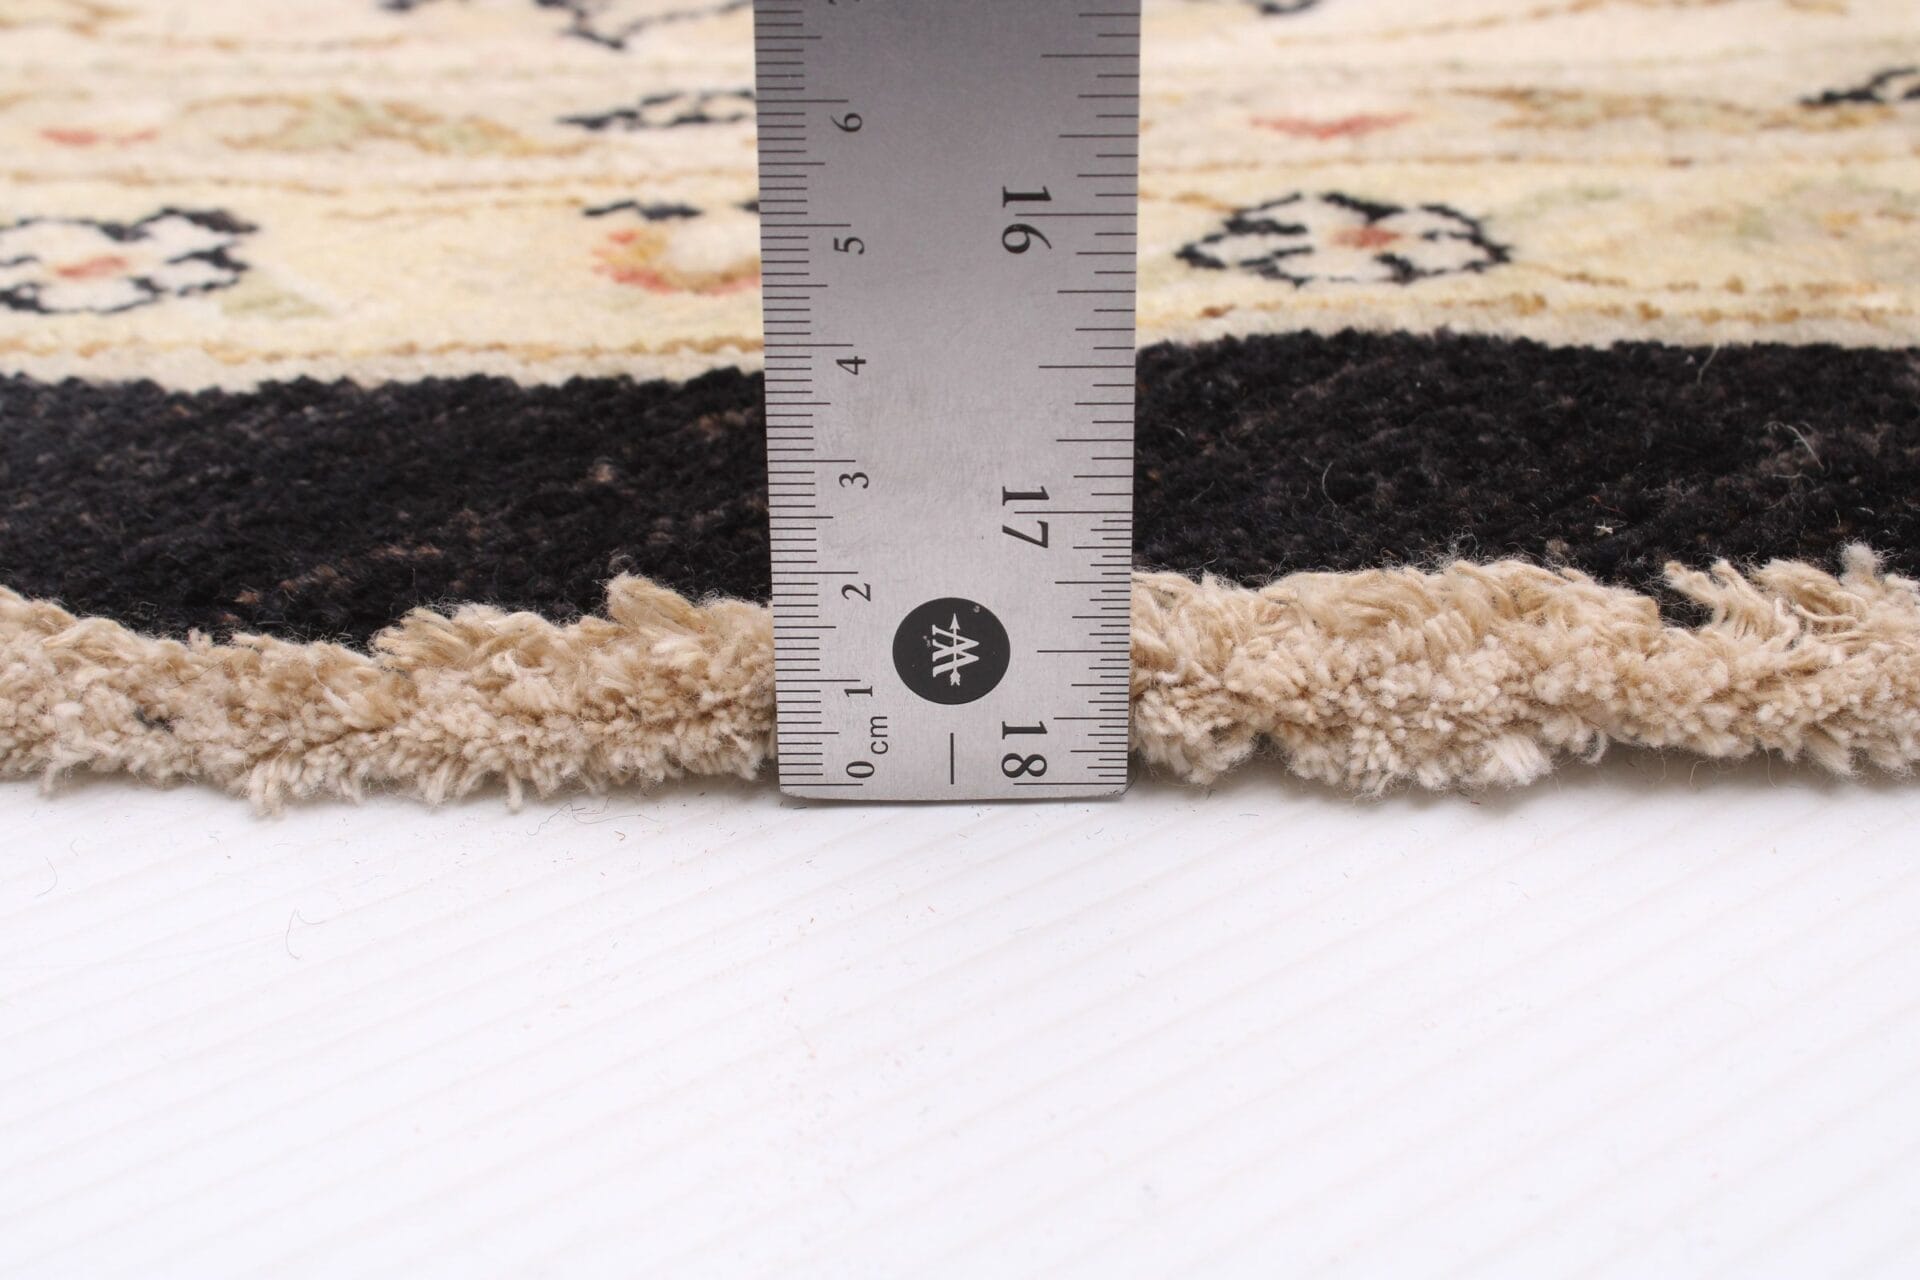 Beschrijving: Een tapijt met een liniaal erbovenop.